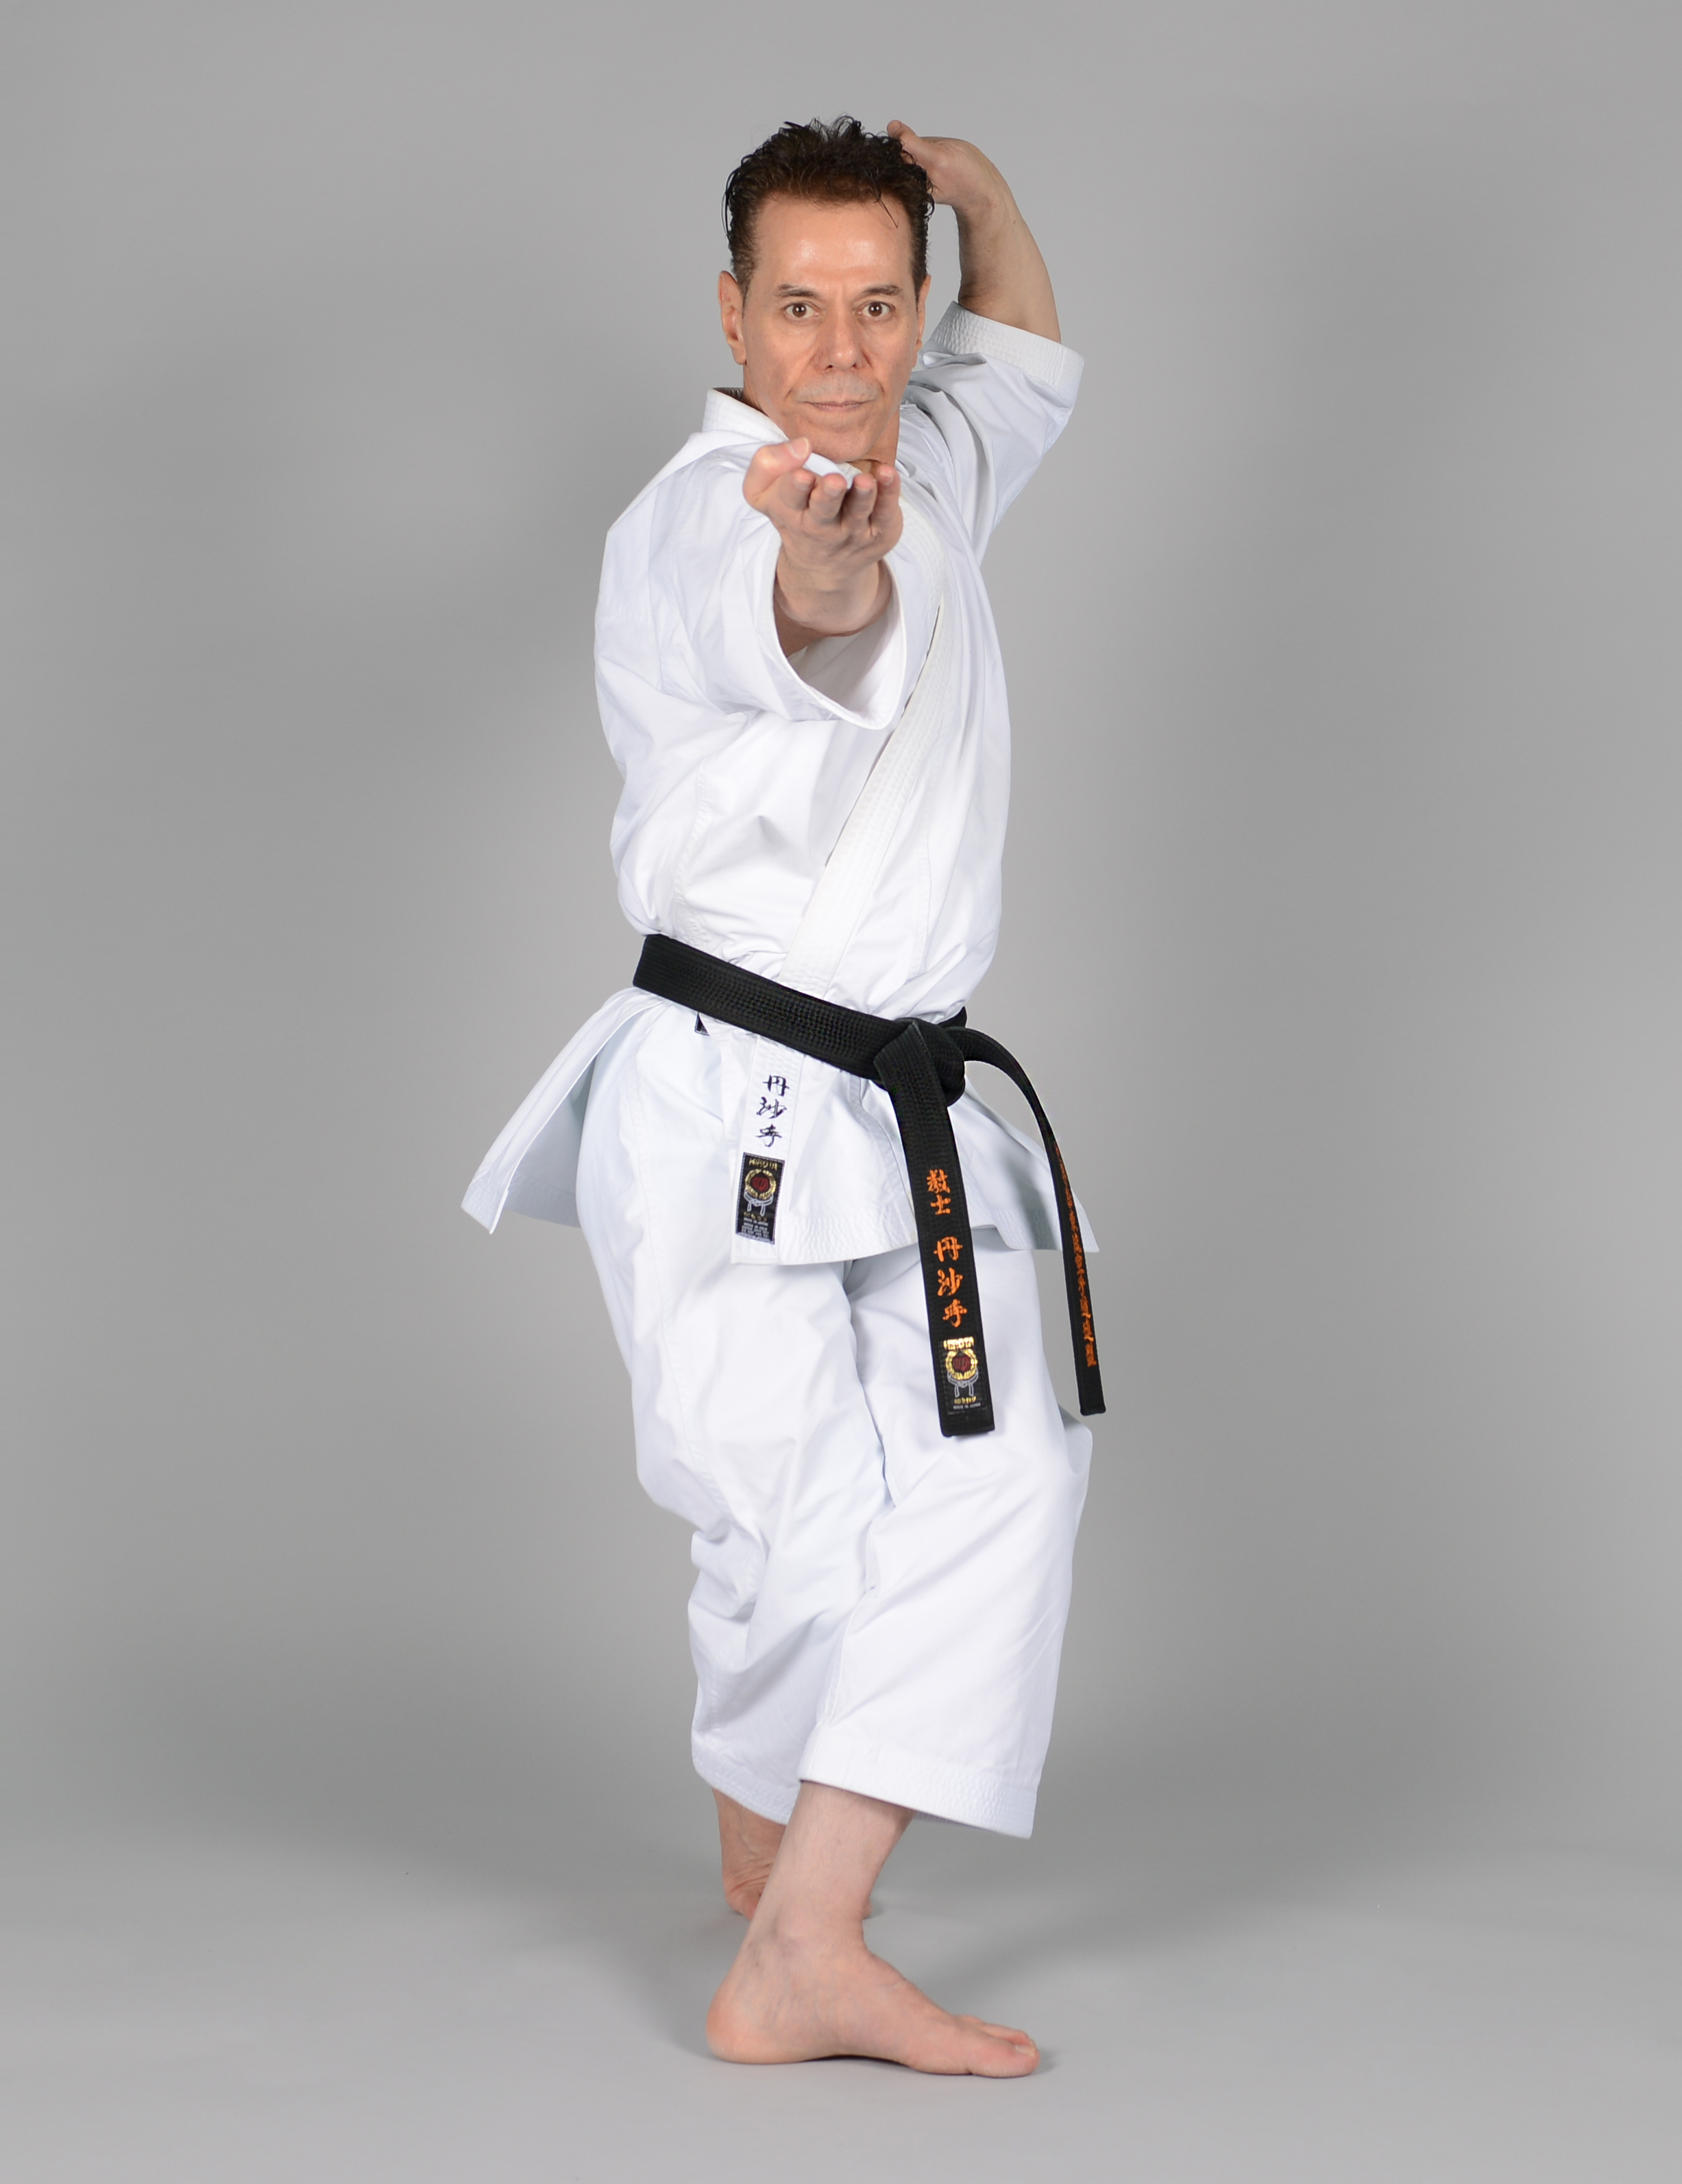 Chatan yara Kushanku - Sensei Tanzadeh Shitoryu Karate 8th Dan, Kyoshi